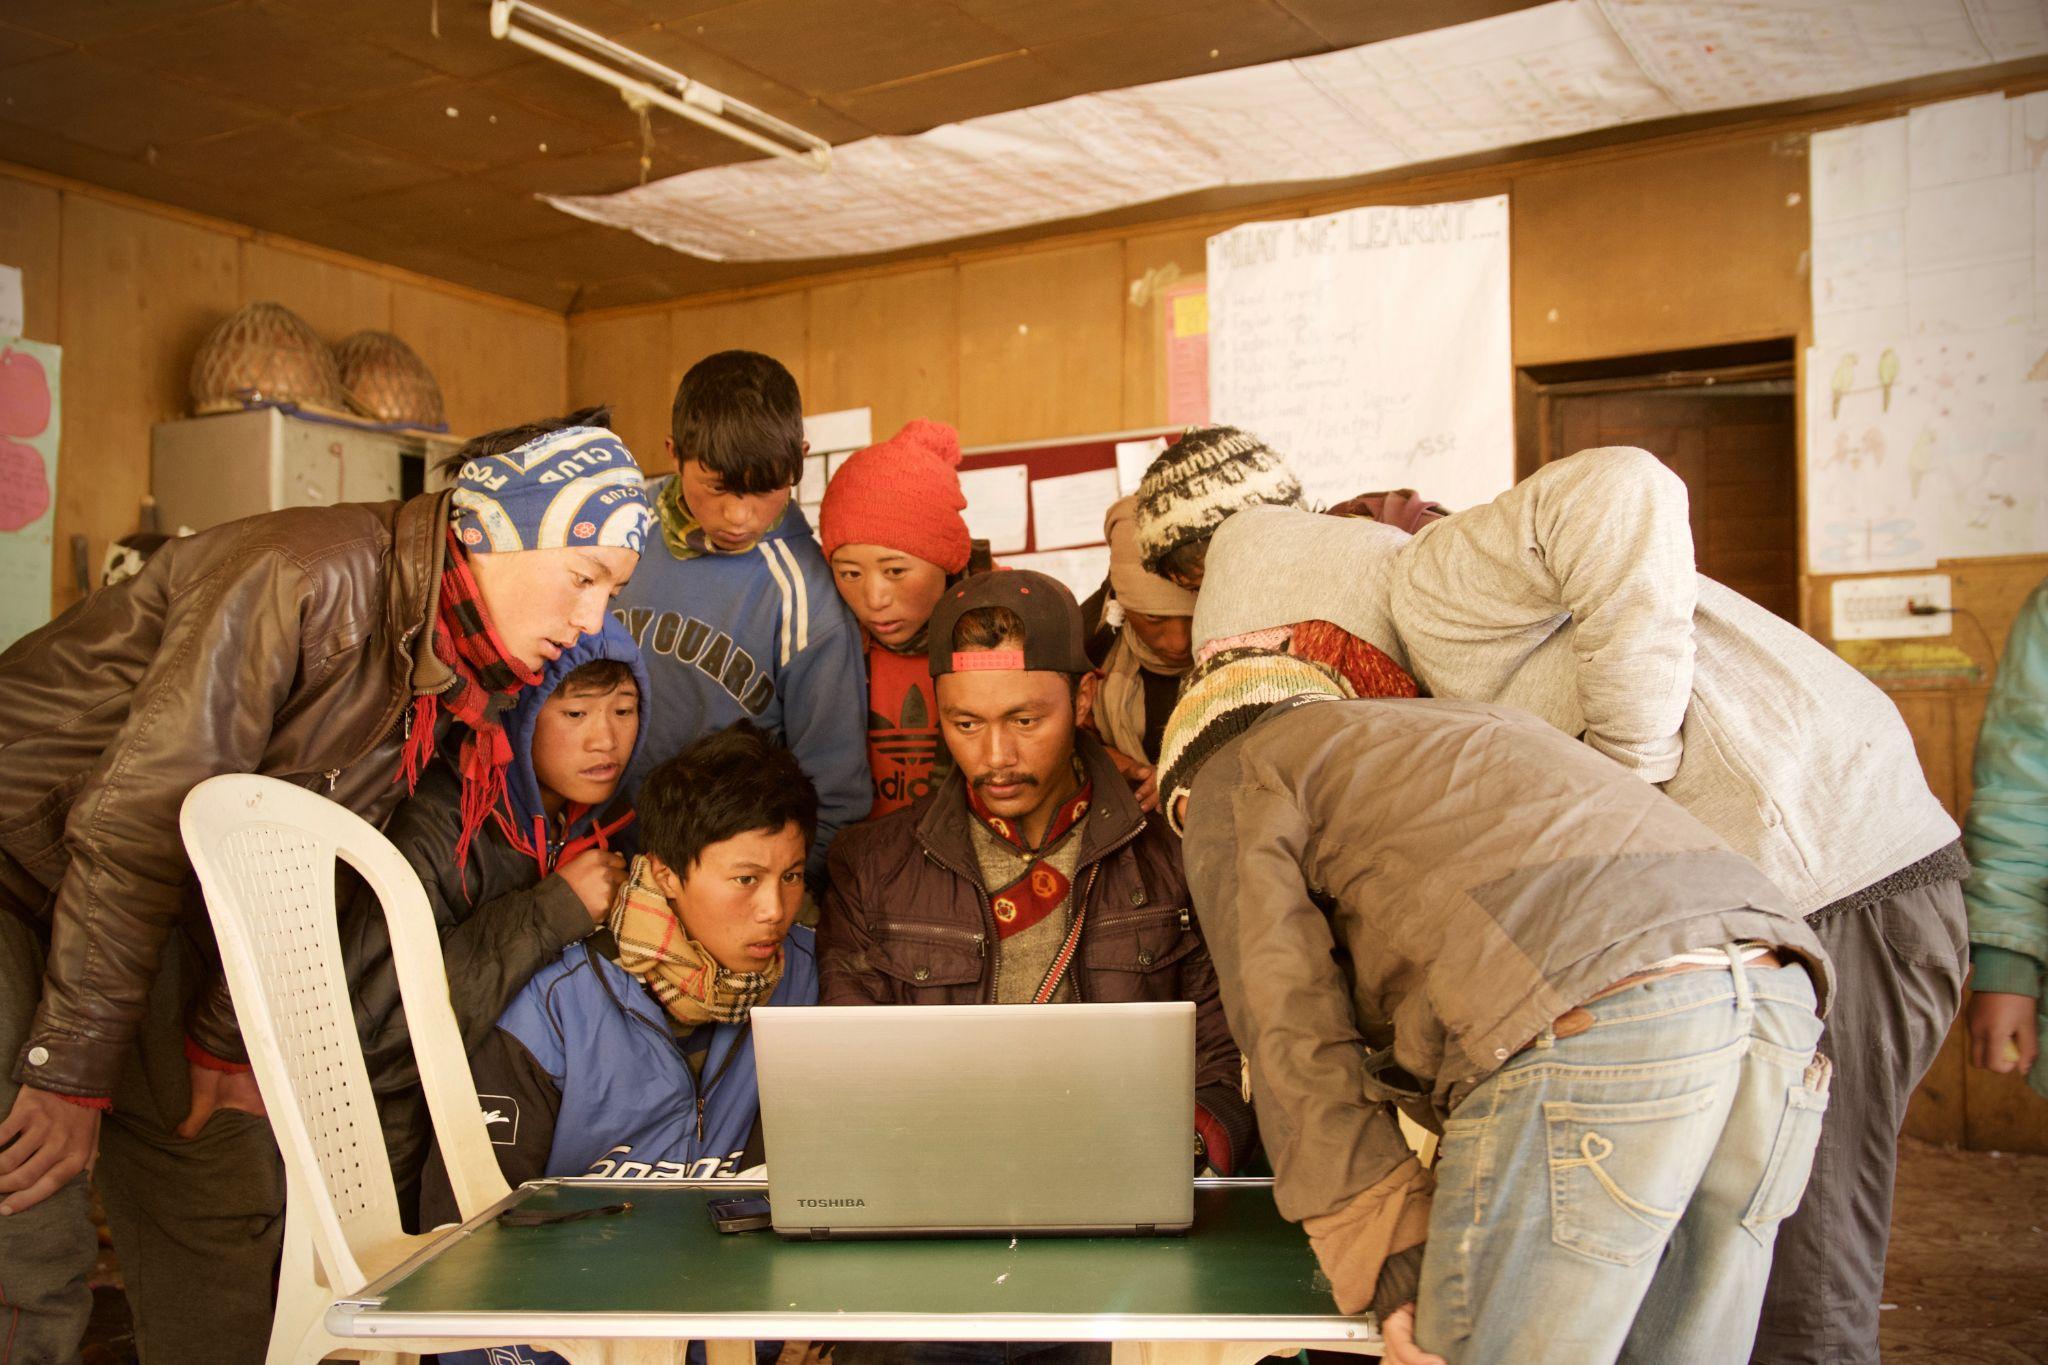 Persone riunite intorno a un laptop in piedi su un tavolo semplice con una sedia di plastica sulla sinistra. Lo sfondo sembra una scuola in un paese in via di sviluppo.